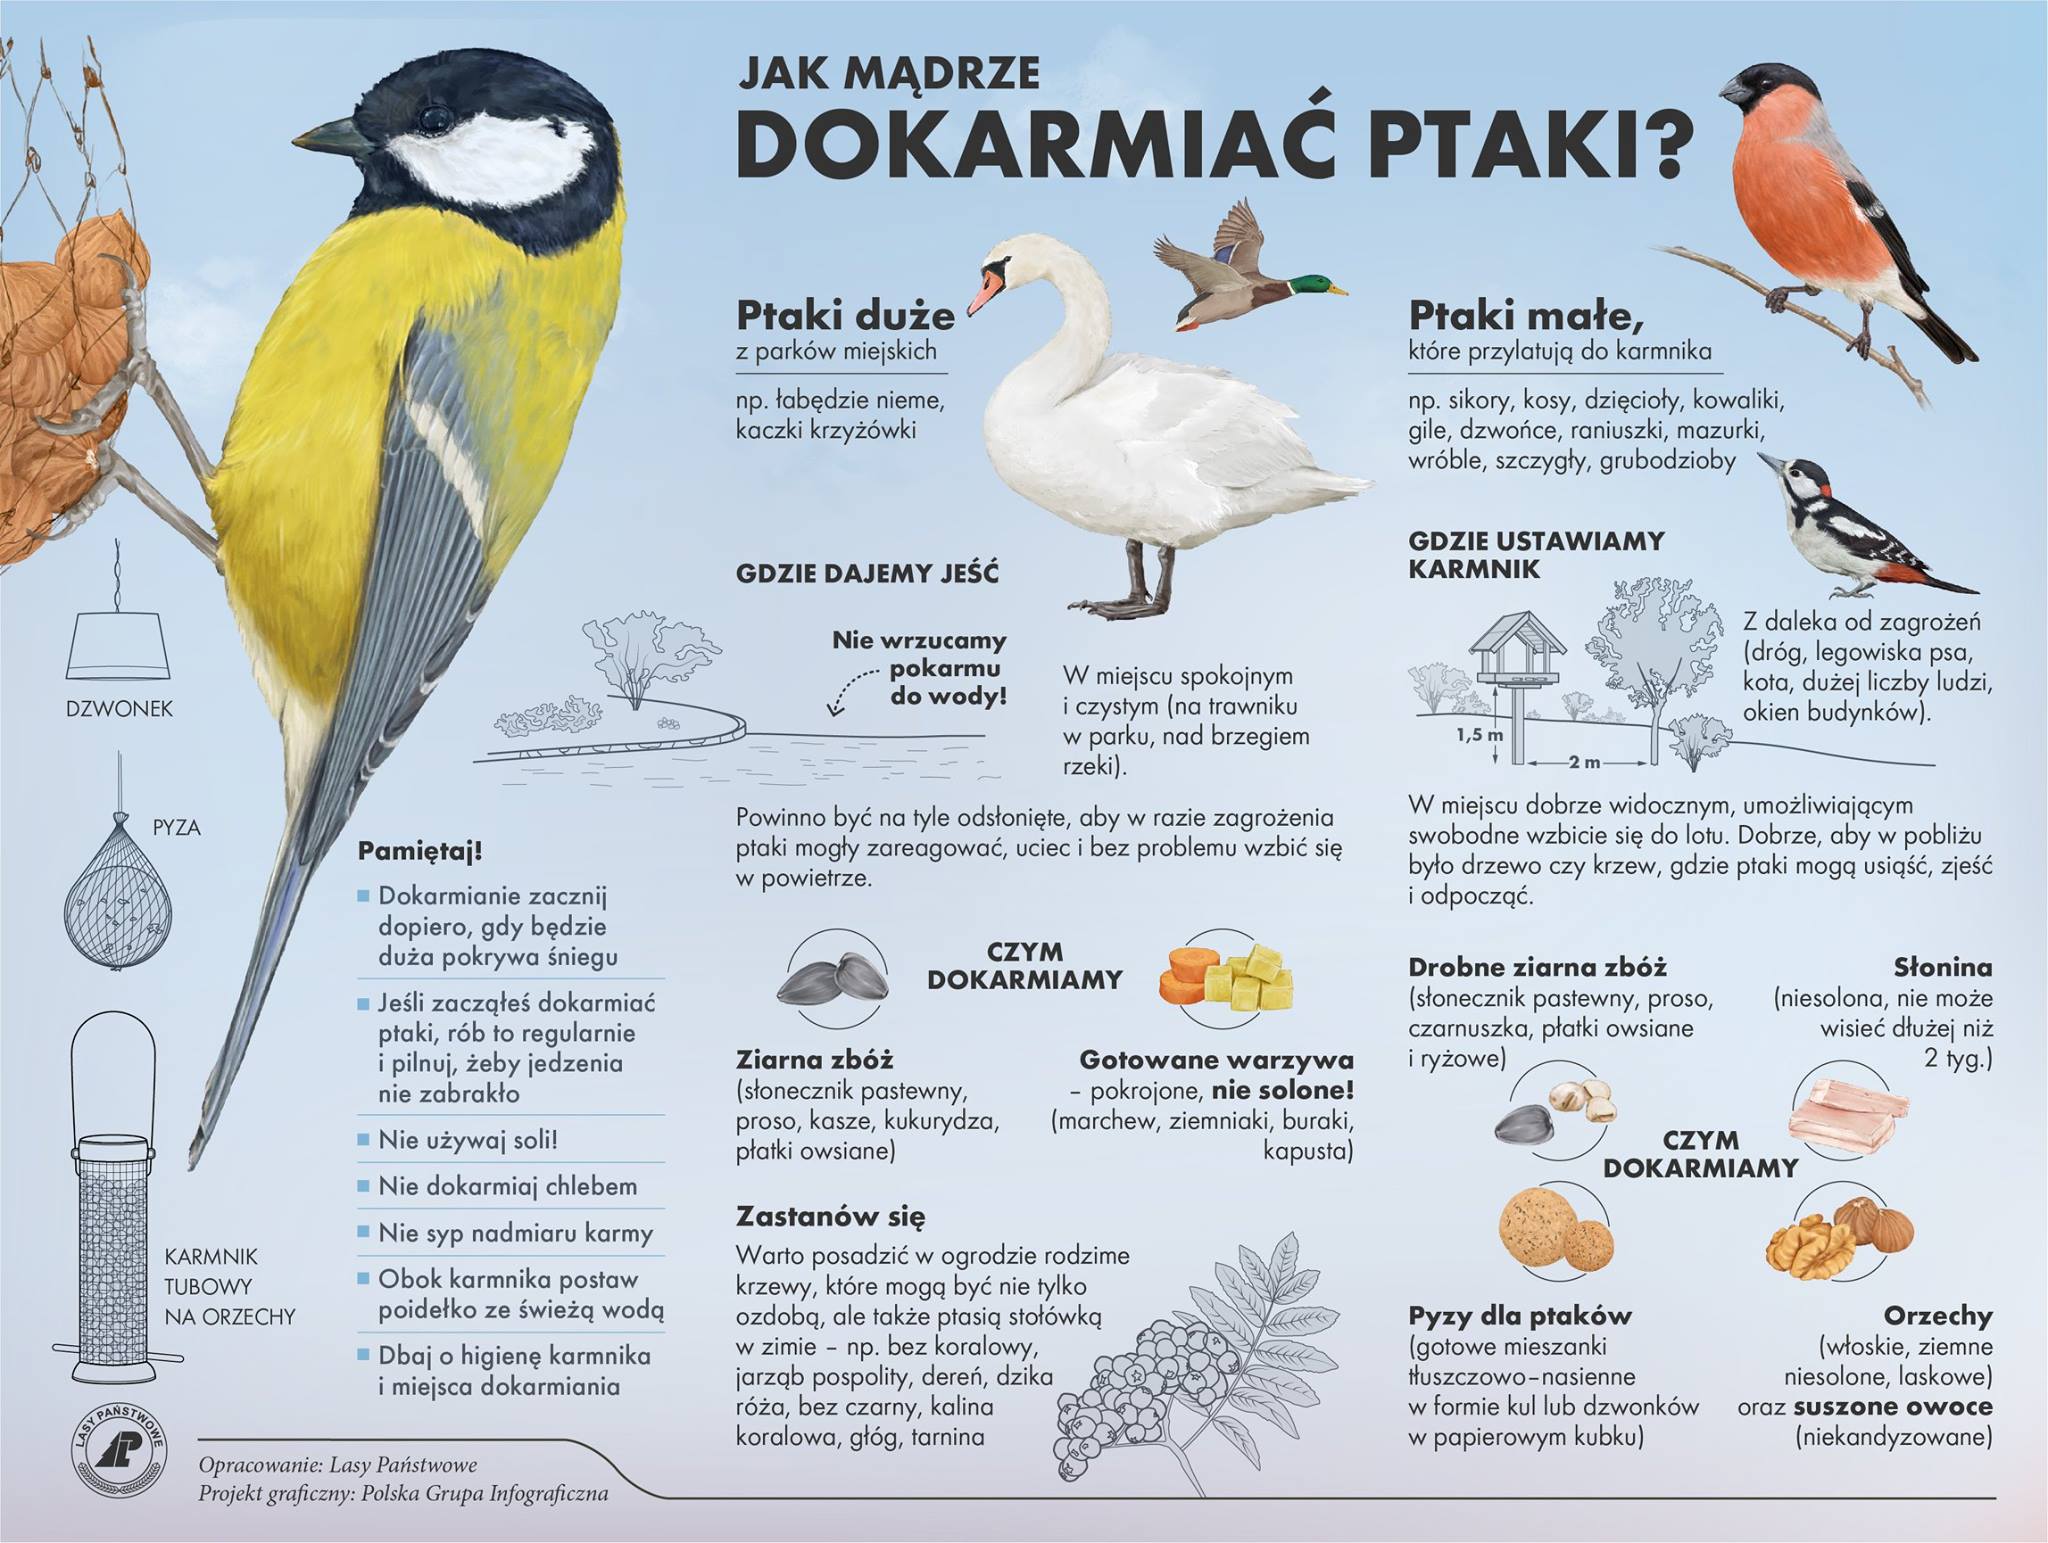 Infografika CILP przedstawia wskazówki, jak mądrze dokarmiać ptaki zimą.